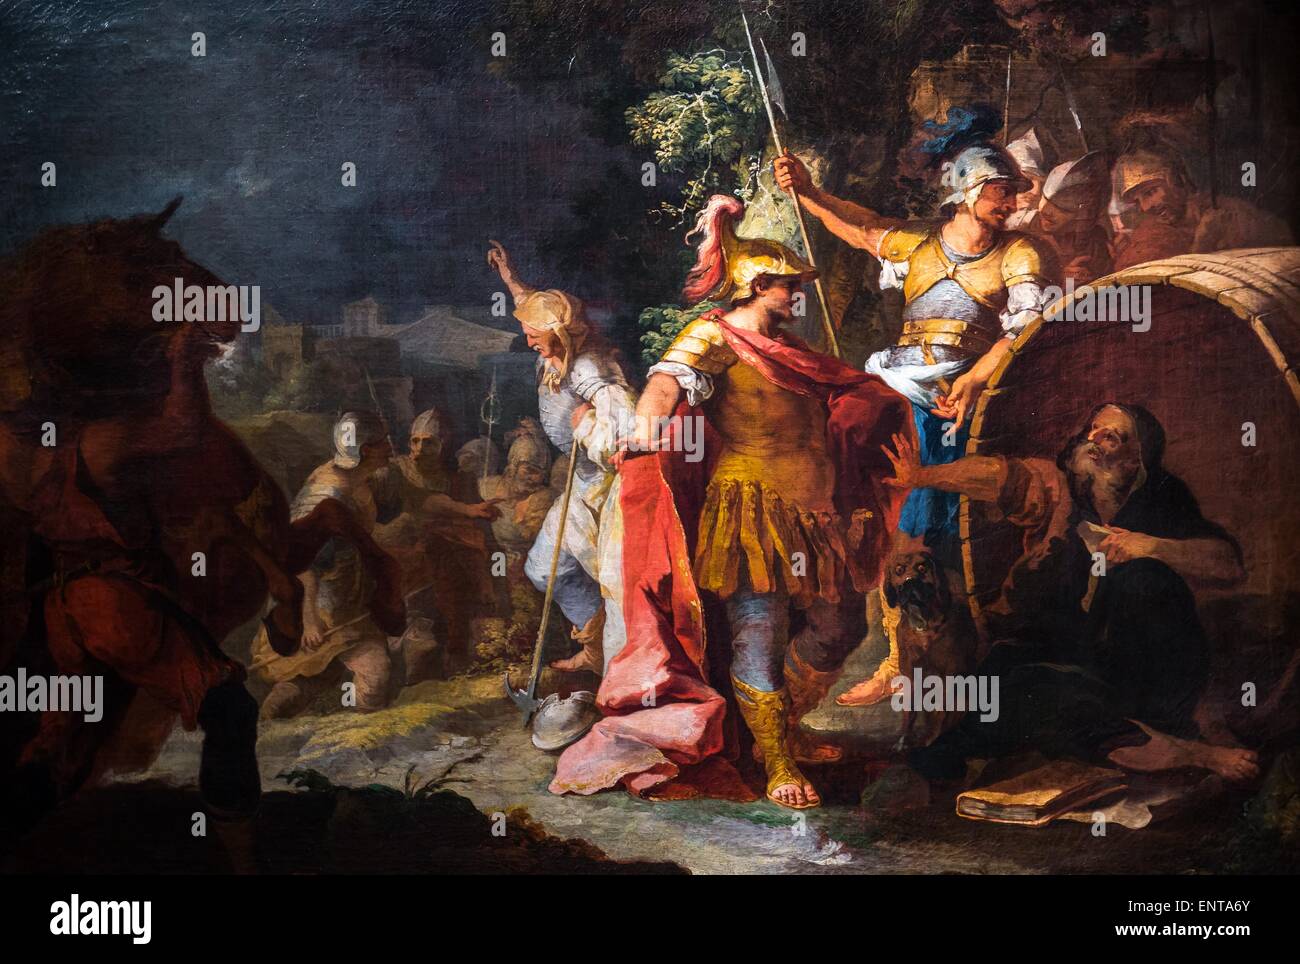 Alexander y Diógenes 25/10/2013 - Colección del siglo XVIII. Foto de stock